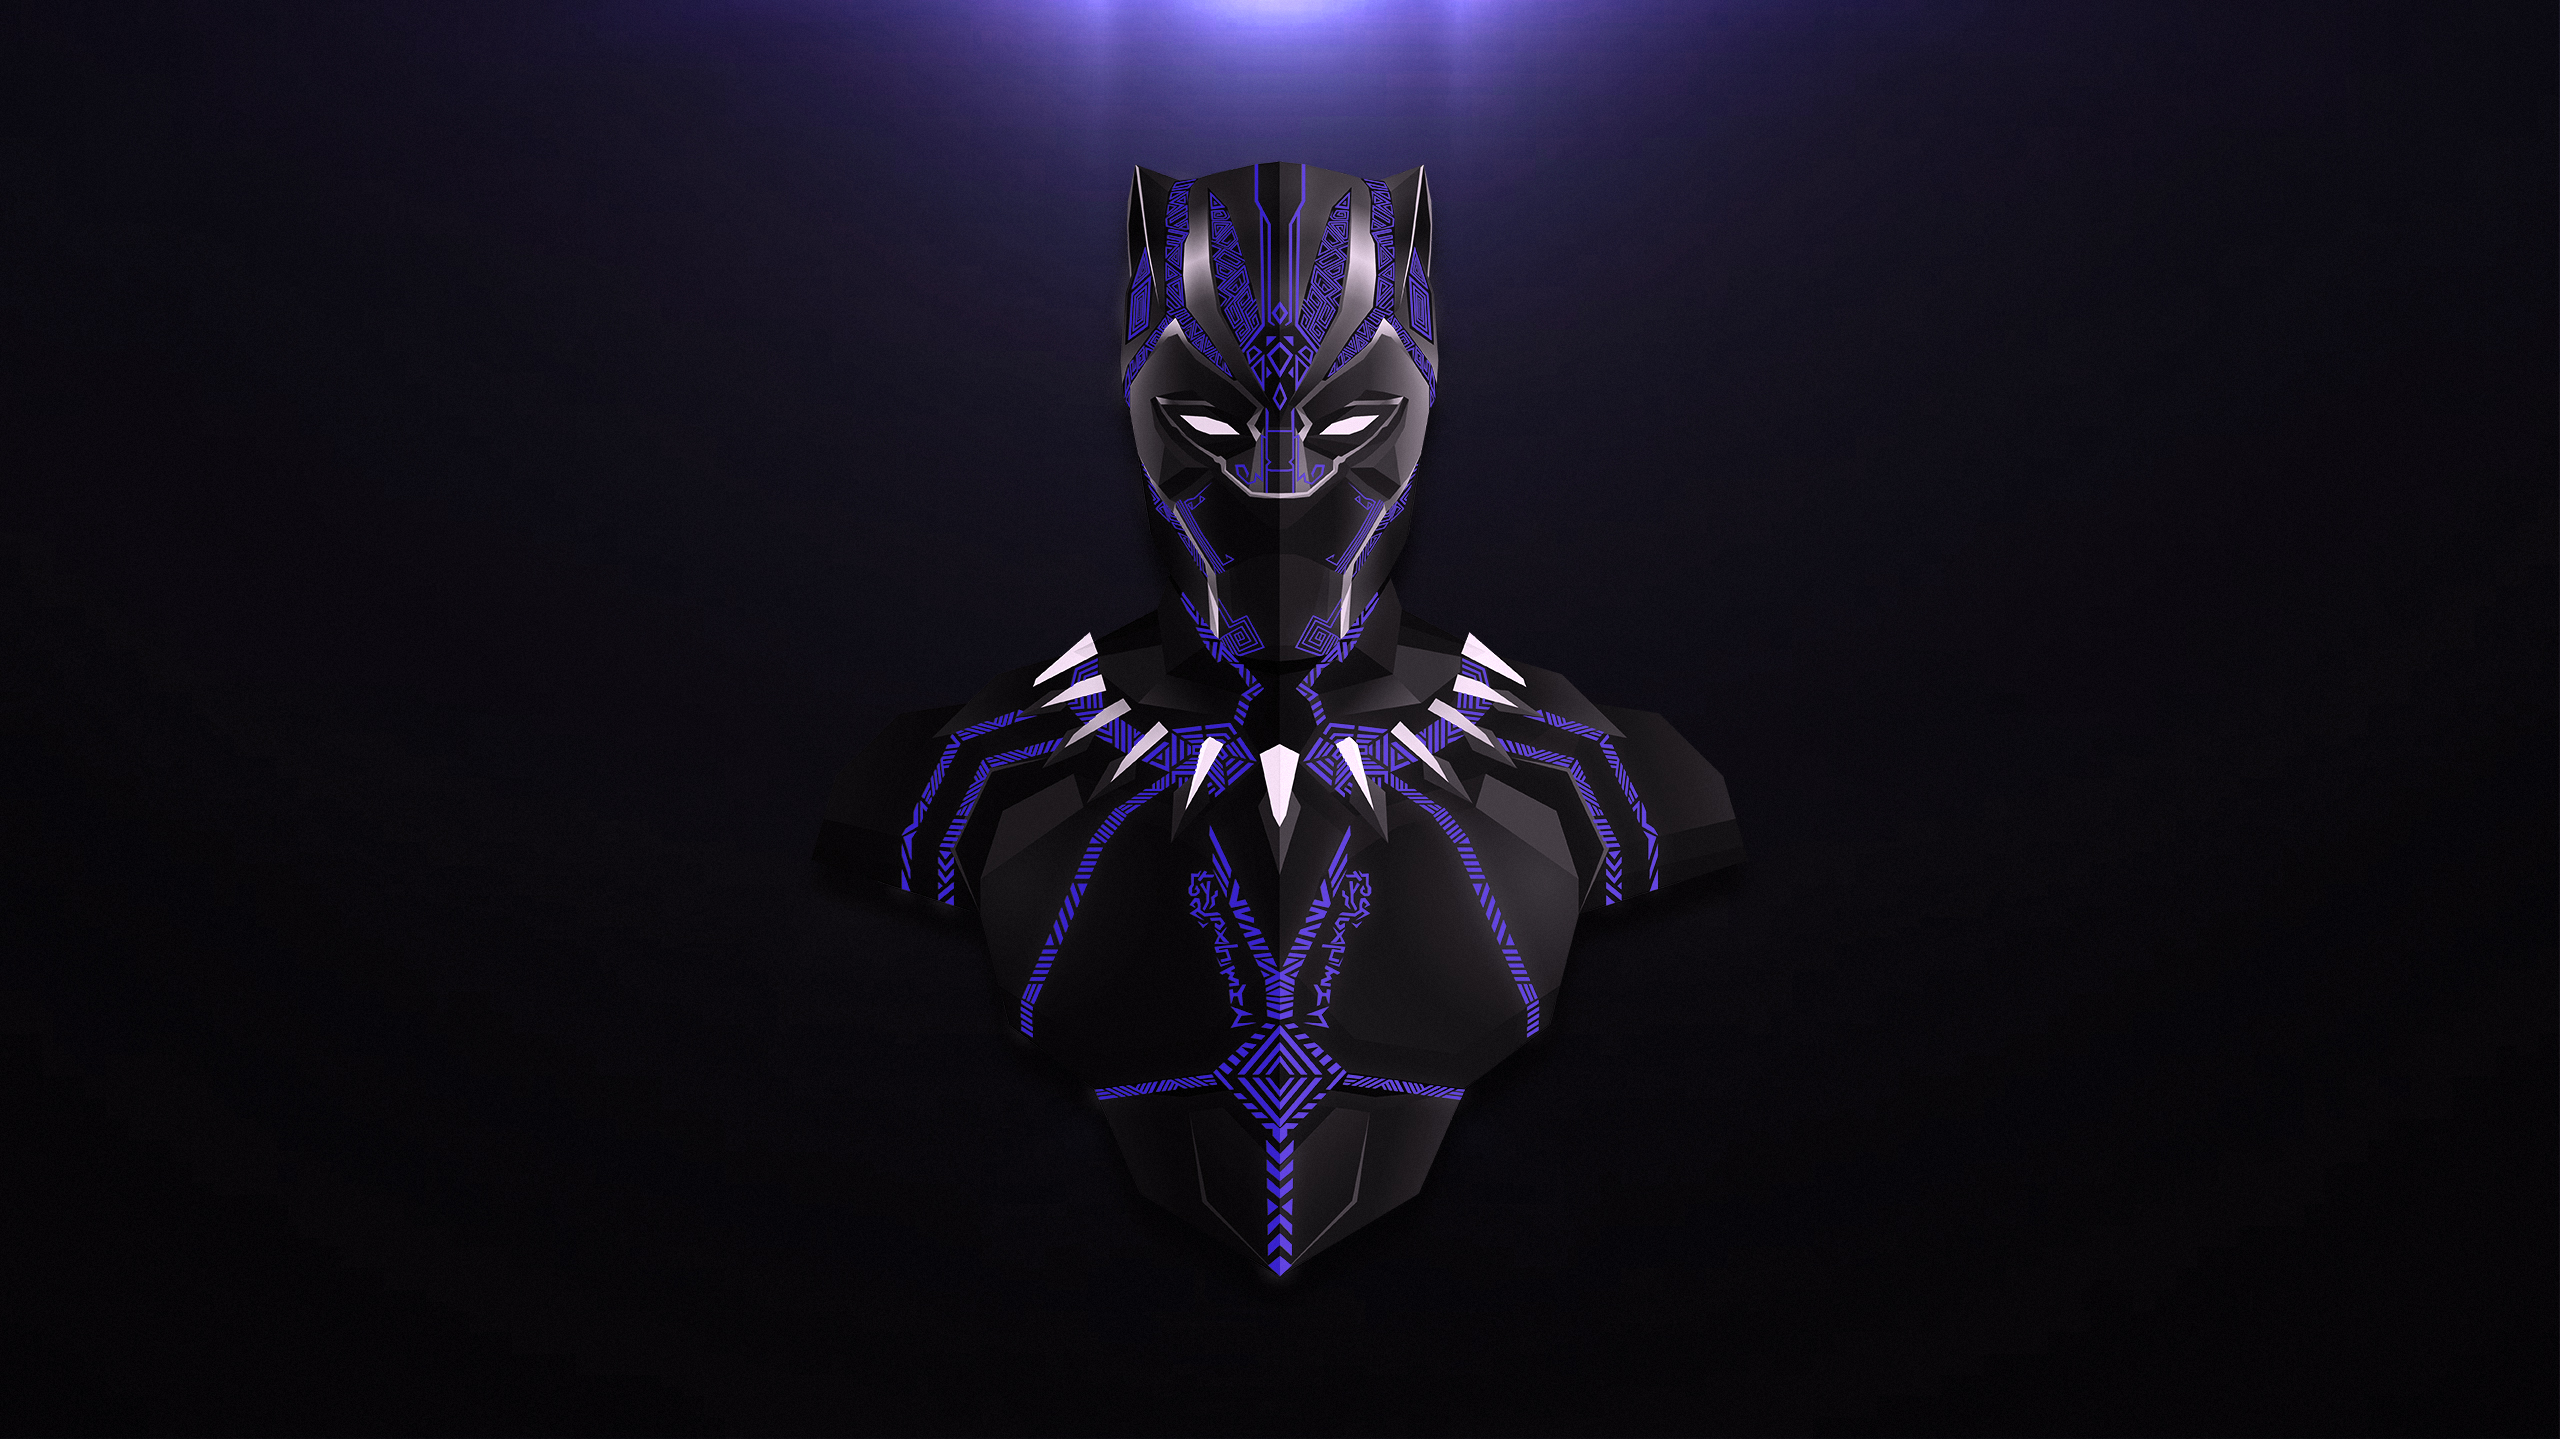 Black Panther Avengers Infinity War Minimal Artwork